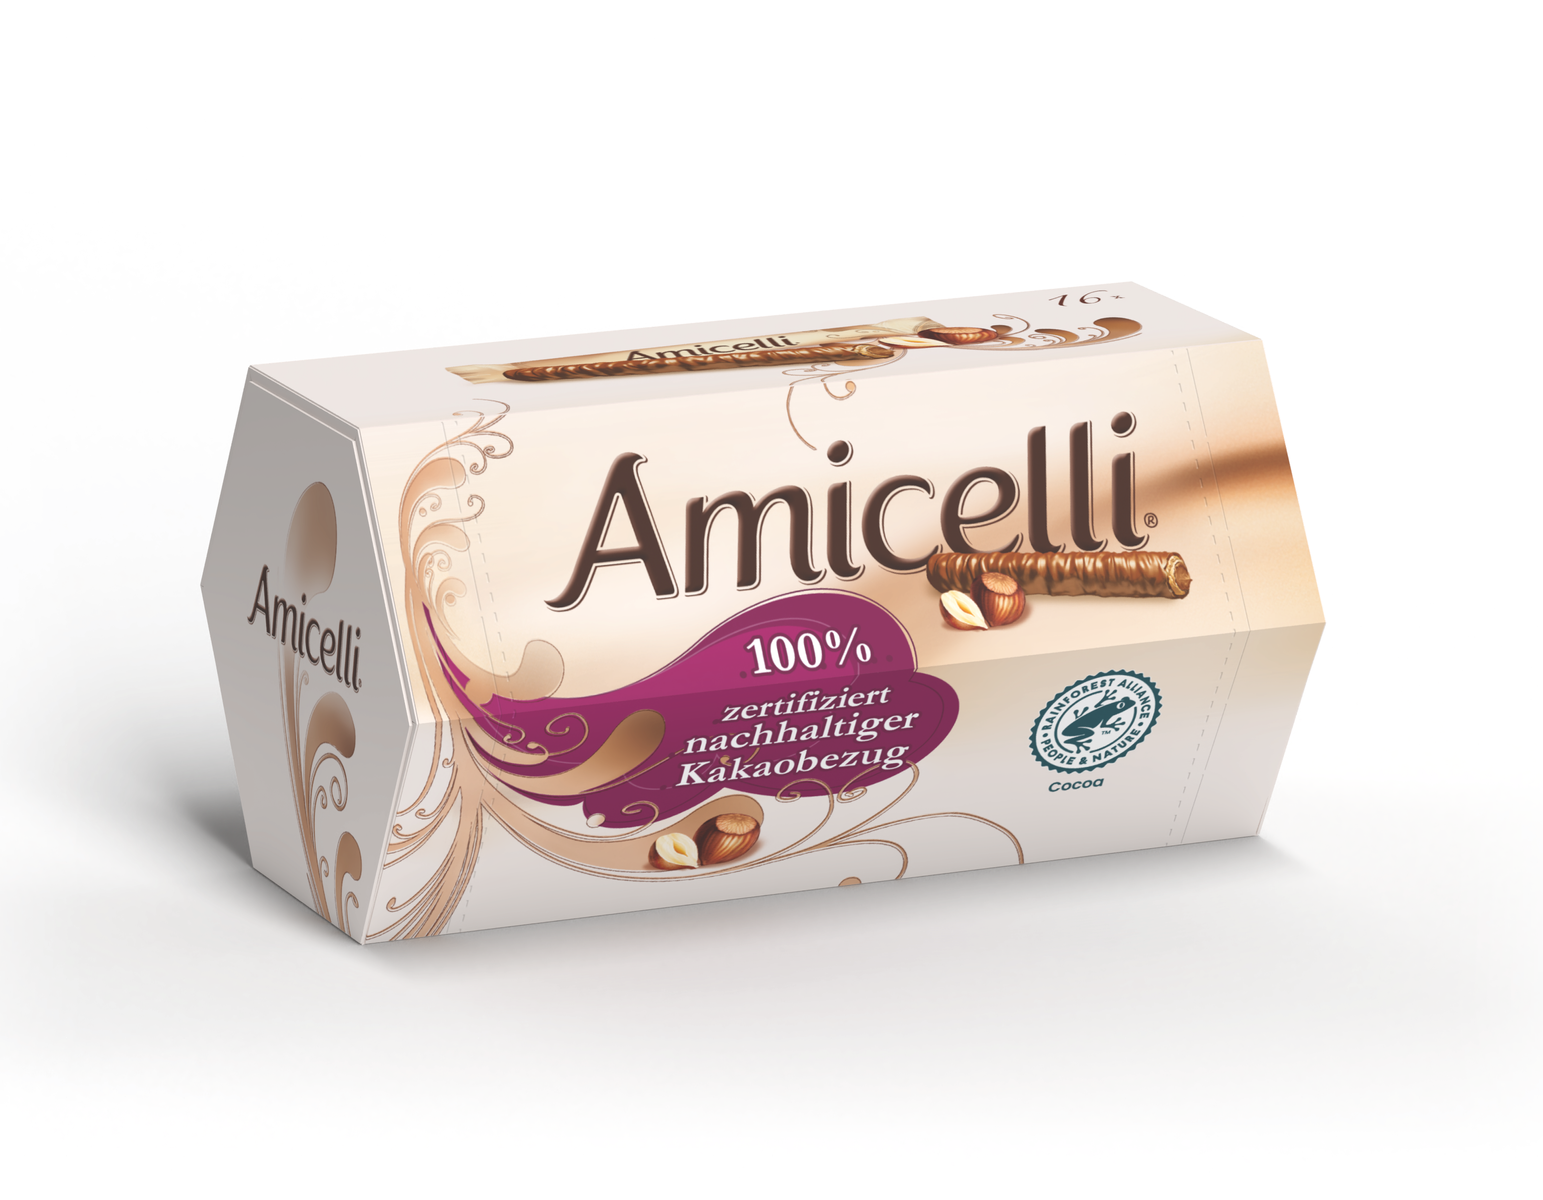 Produktabbildung der Amicelli 150 g Verpackung. Davor liegt ein Waffelröllchen und zwei Haselnüsse.